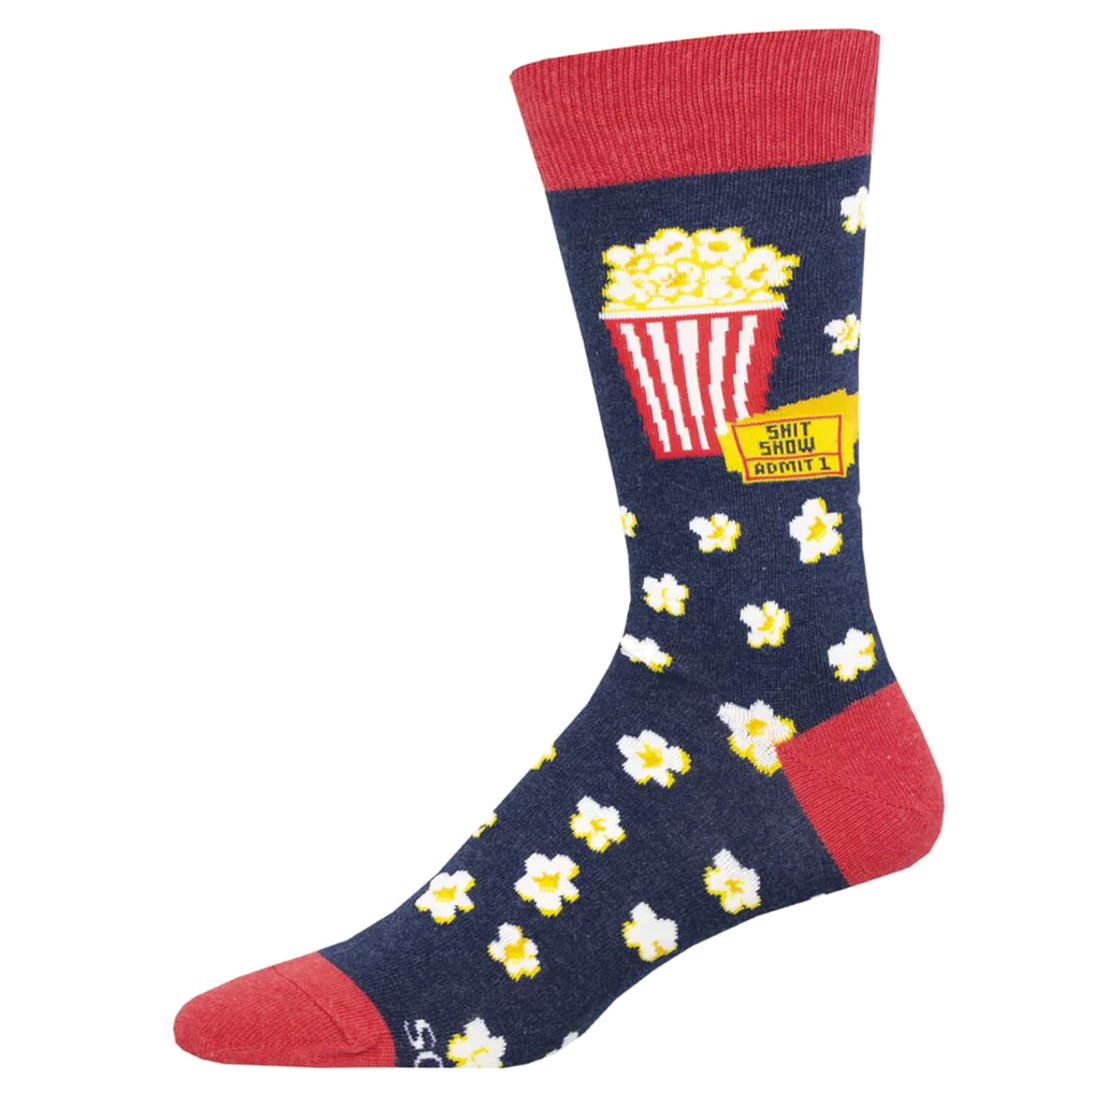 Shit Show Popcorn Men's Socks